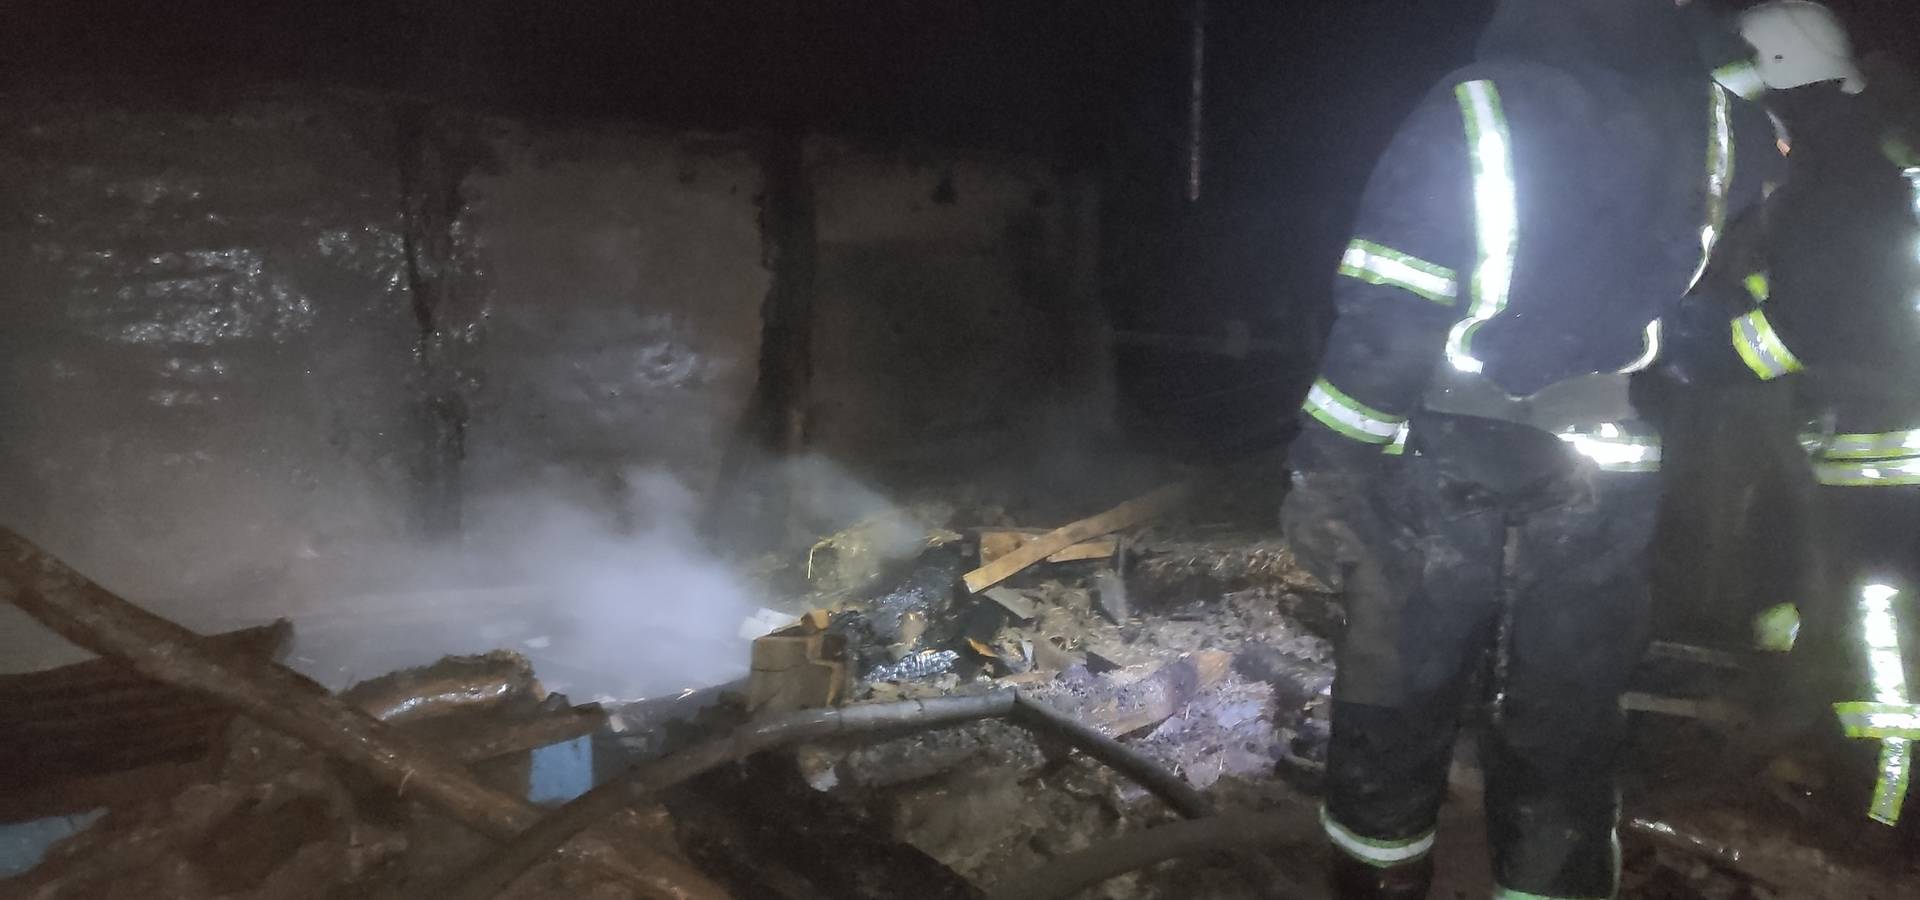 В селі Кривошиї Хмільницької громади з палаючого будинку пожежники врятували жінку